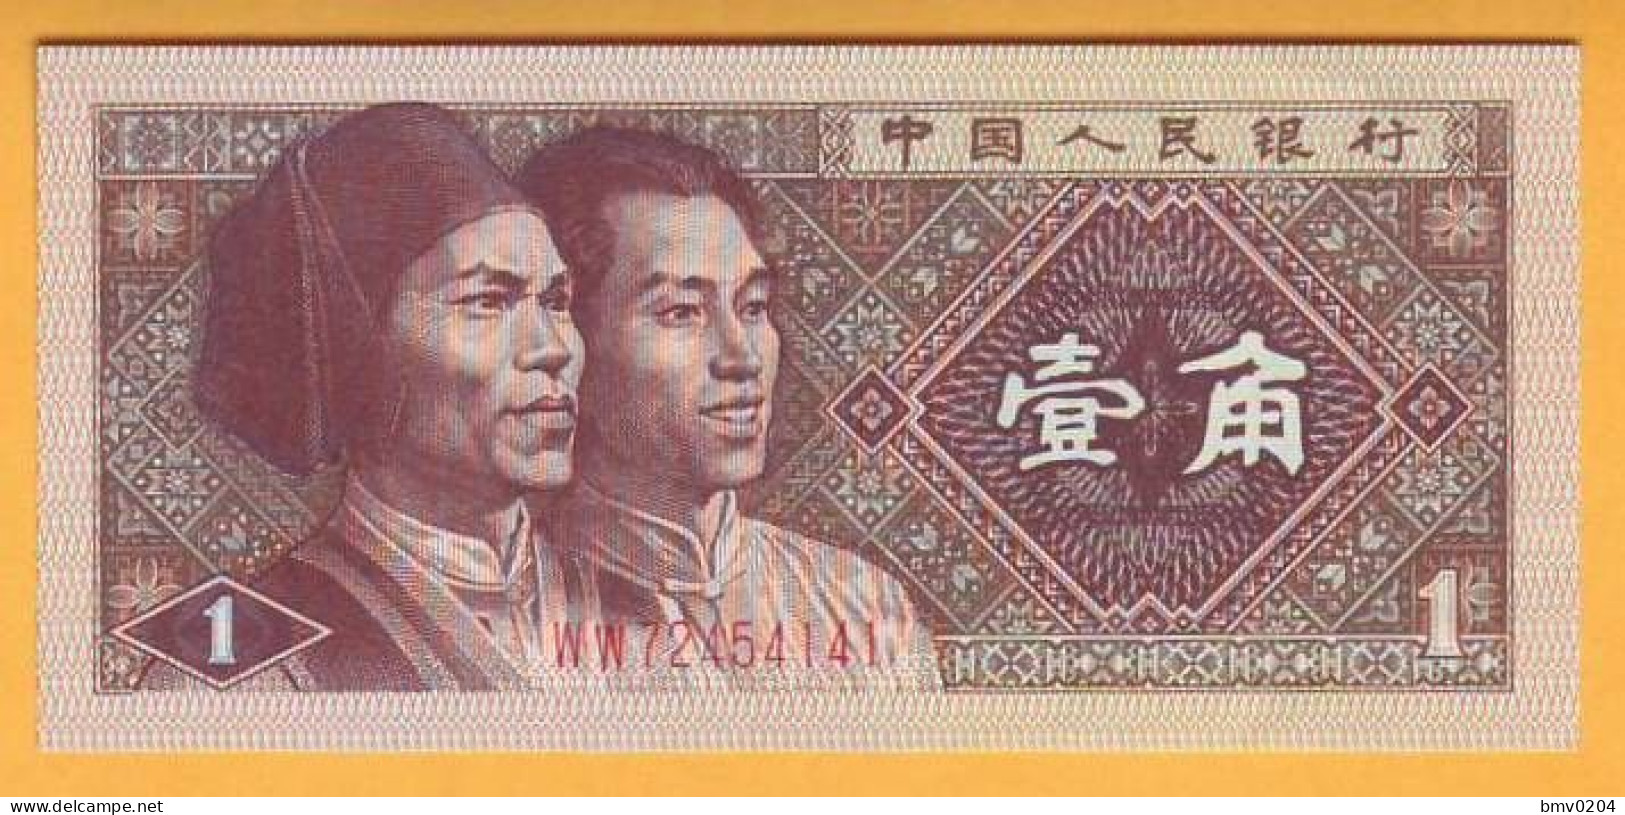 1980 China. 1 Yuan UNC WW 72454141 - China